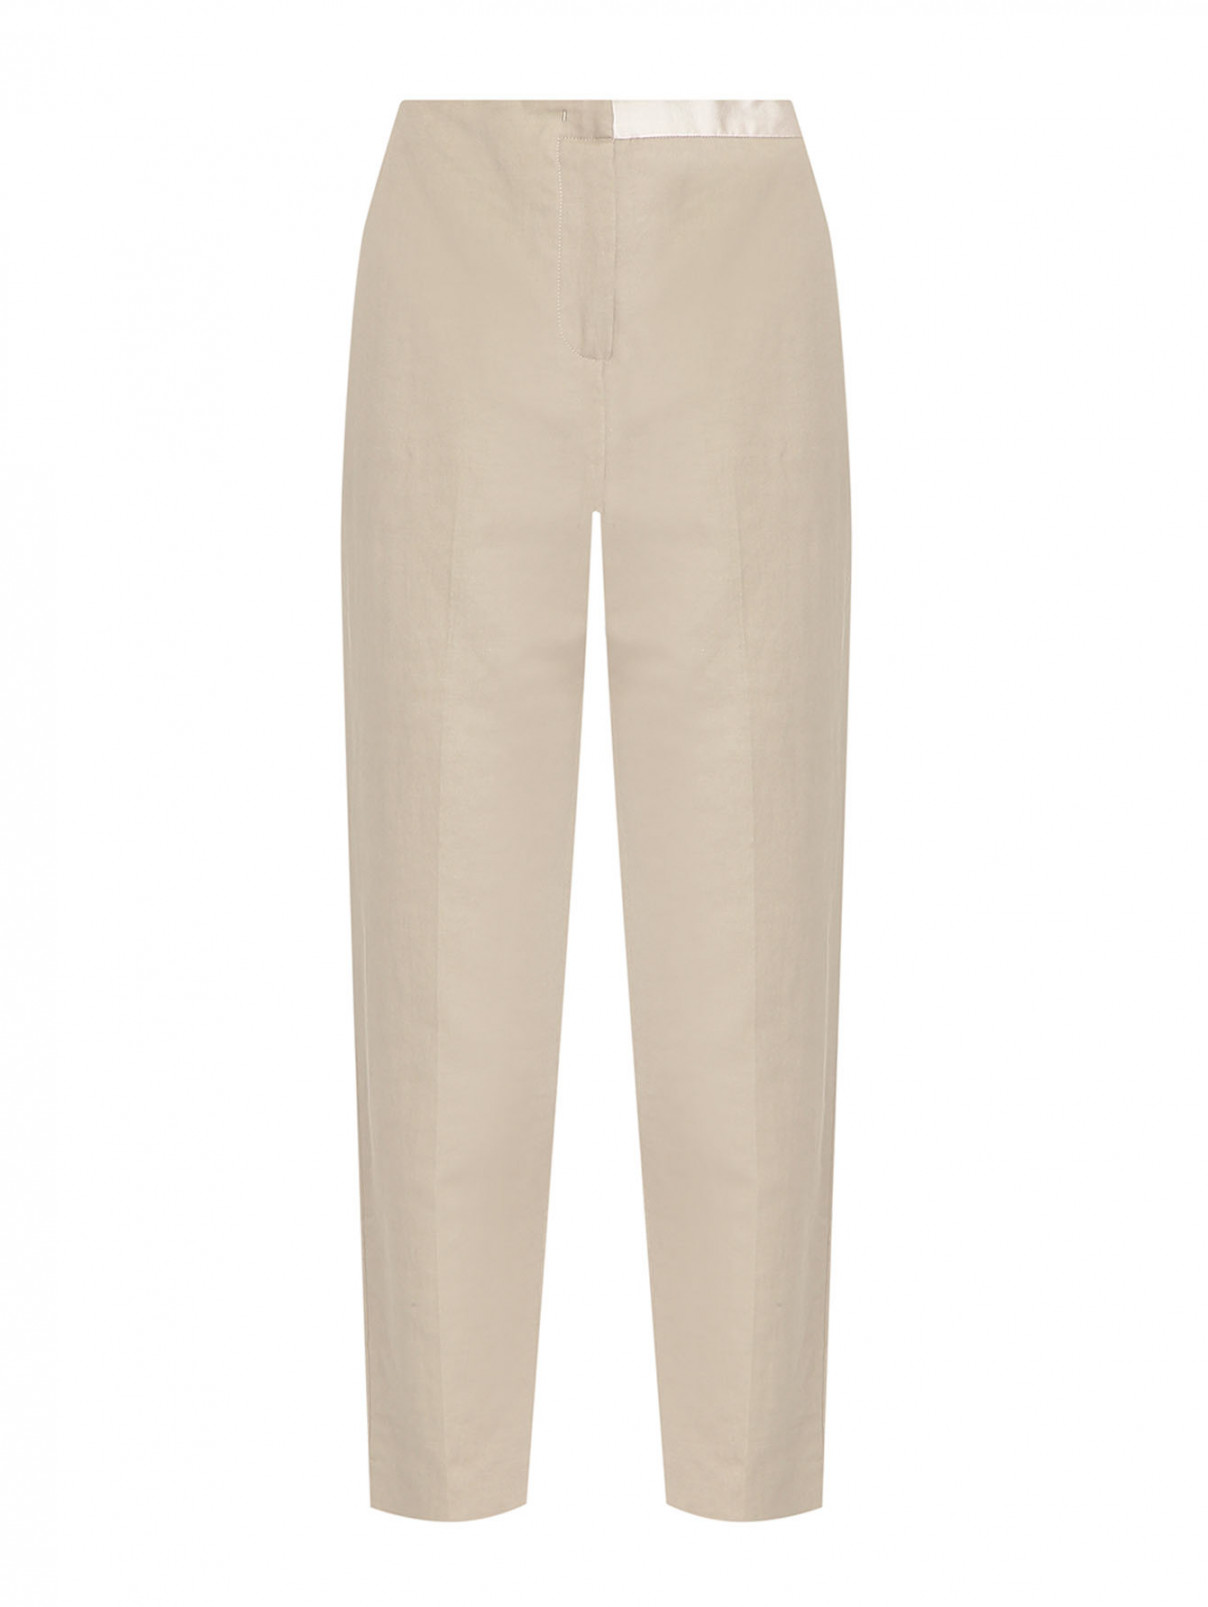 Однотонные брюки из хлопка и льна с карманами Fabiana Filippi  –  Общий вид